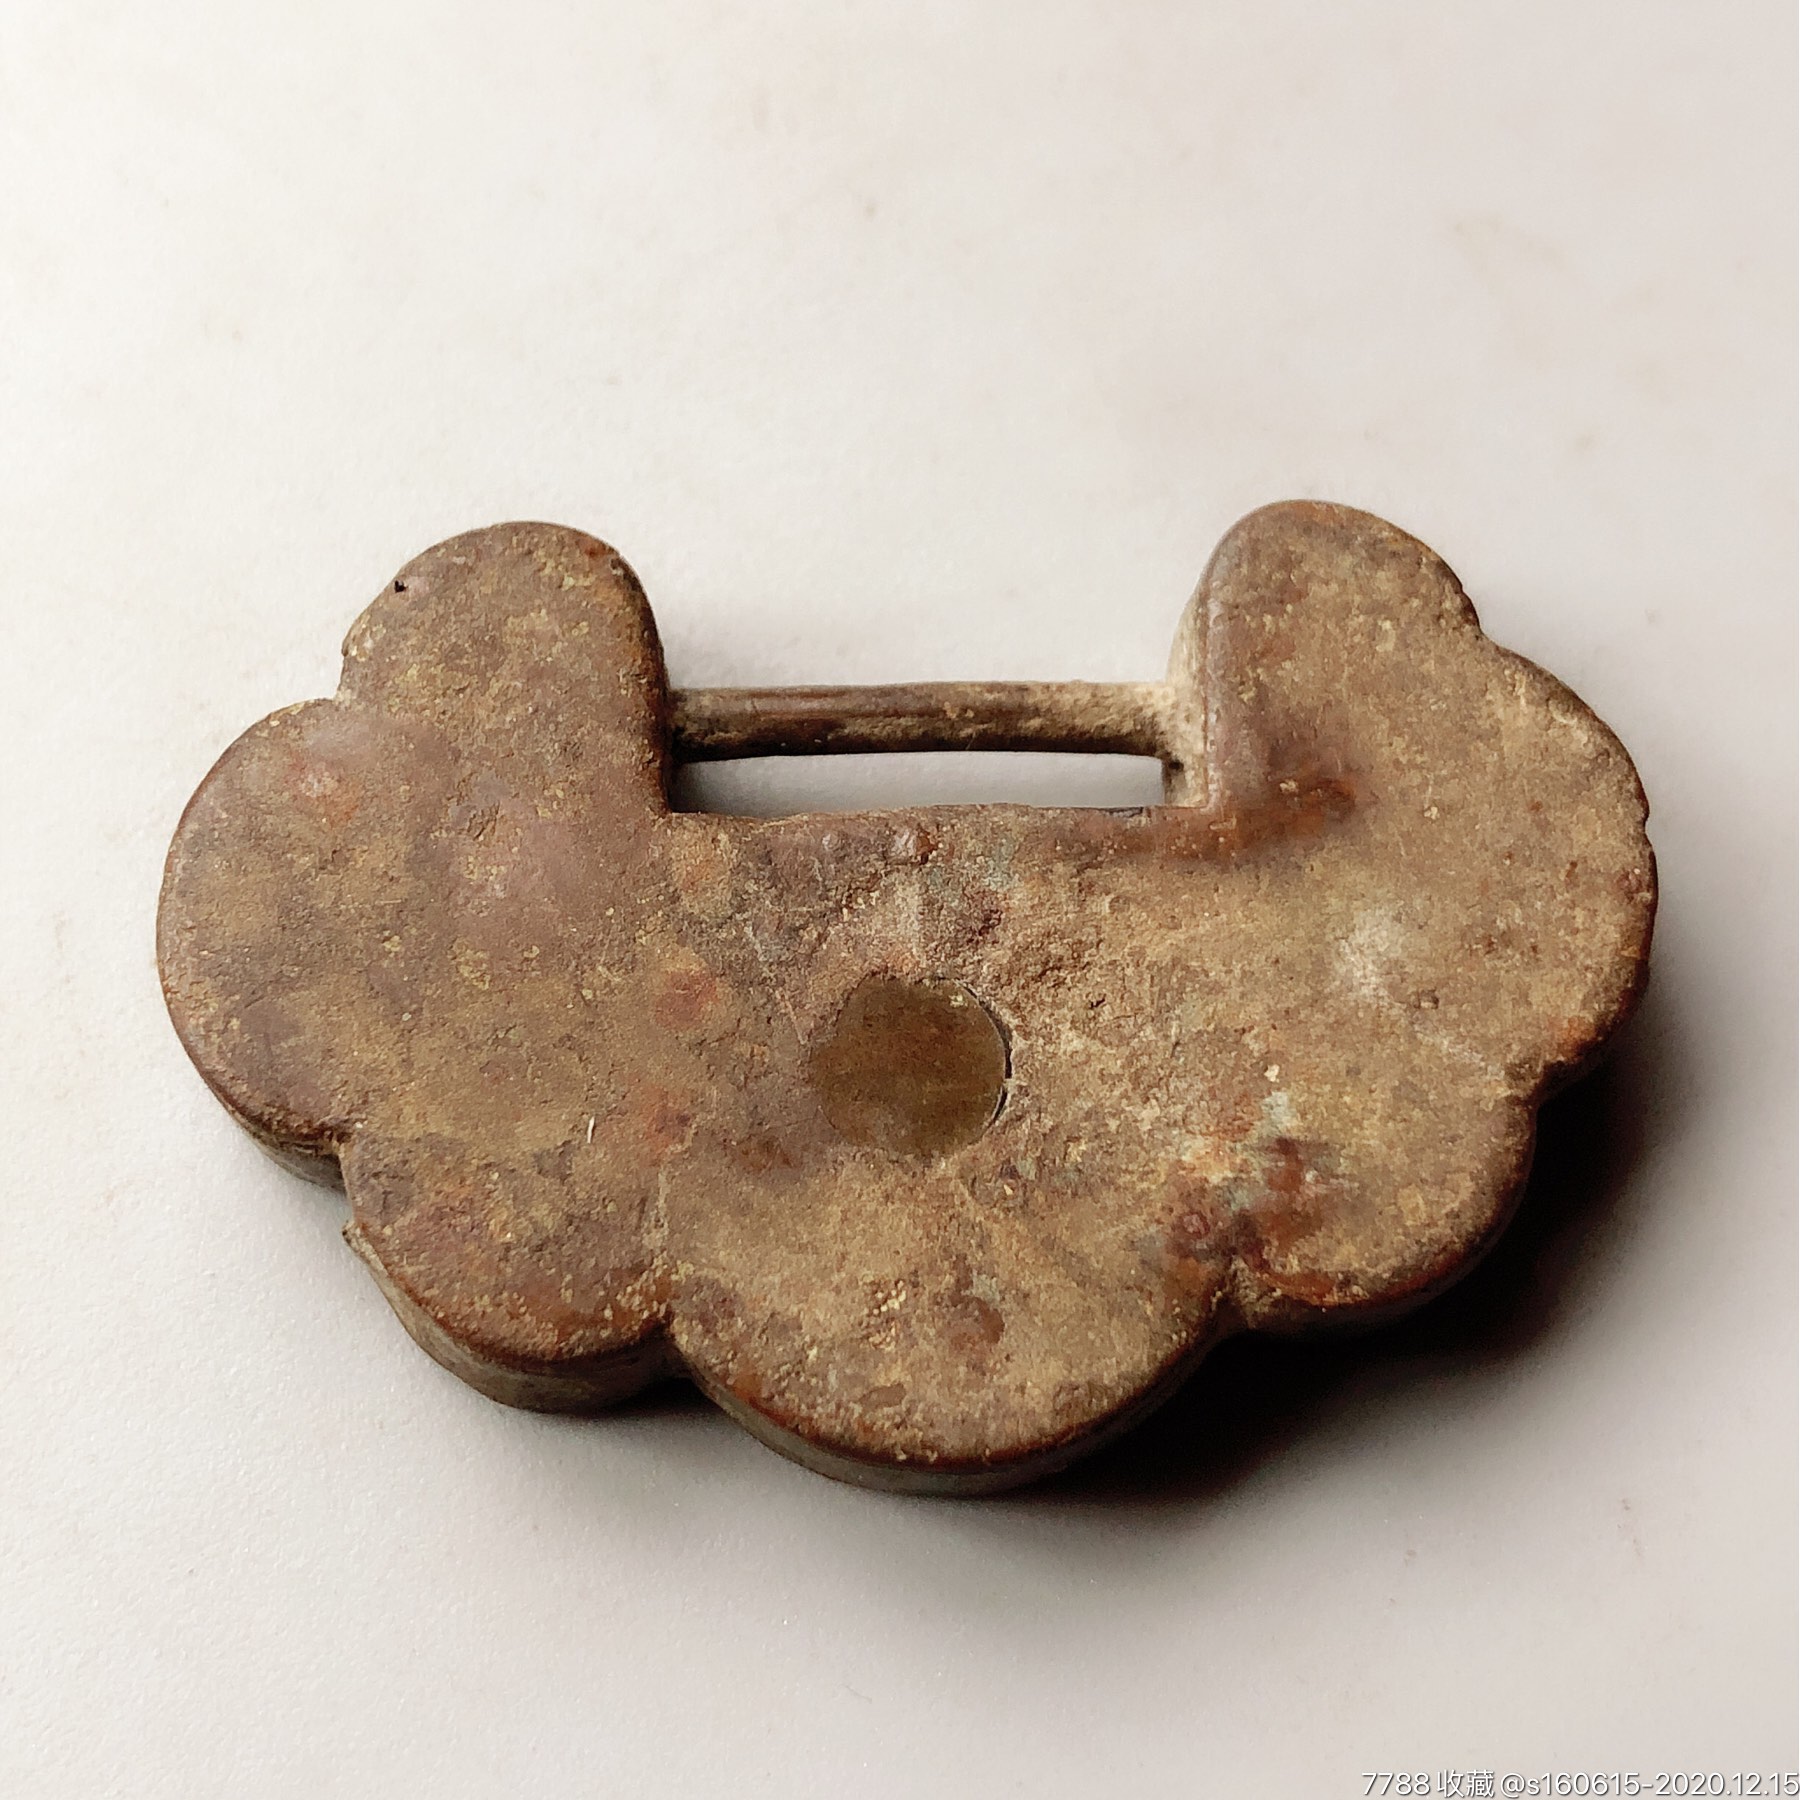 宋代元代明代古代老铜锁如意形古董铜锁刻画镶嵌中华古锁收藏复古